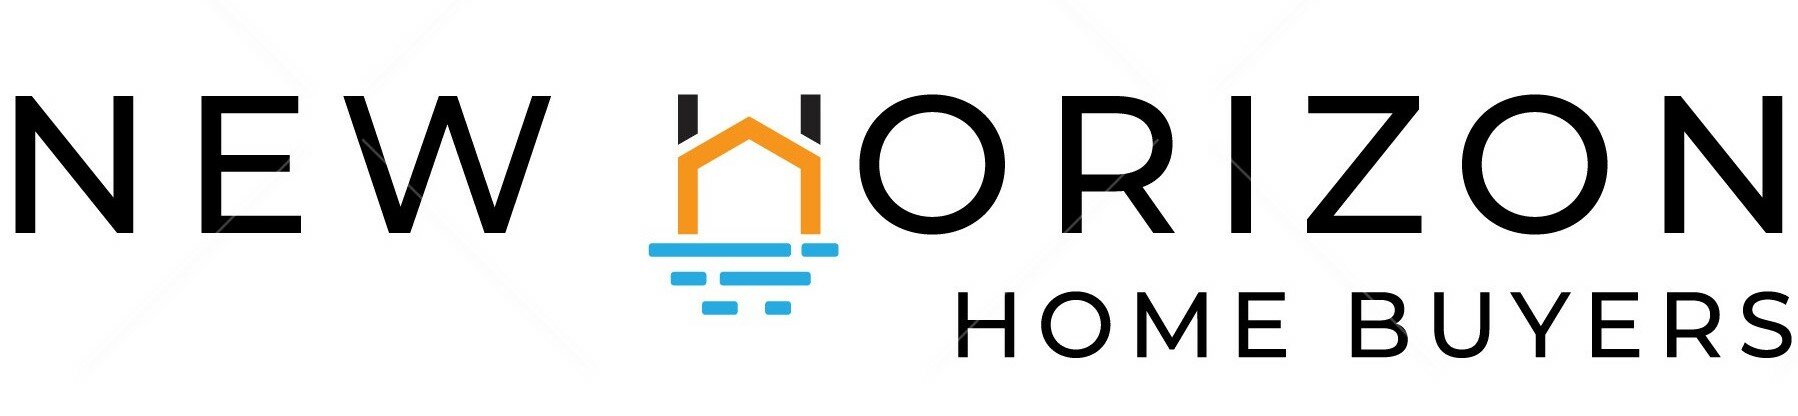 New Horizon Home Buyers logo